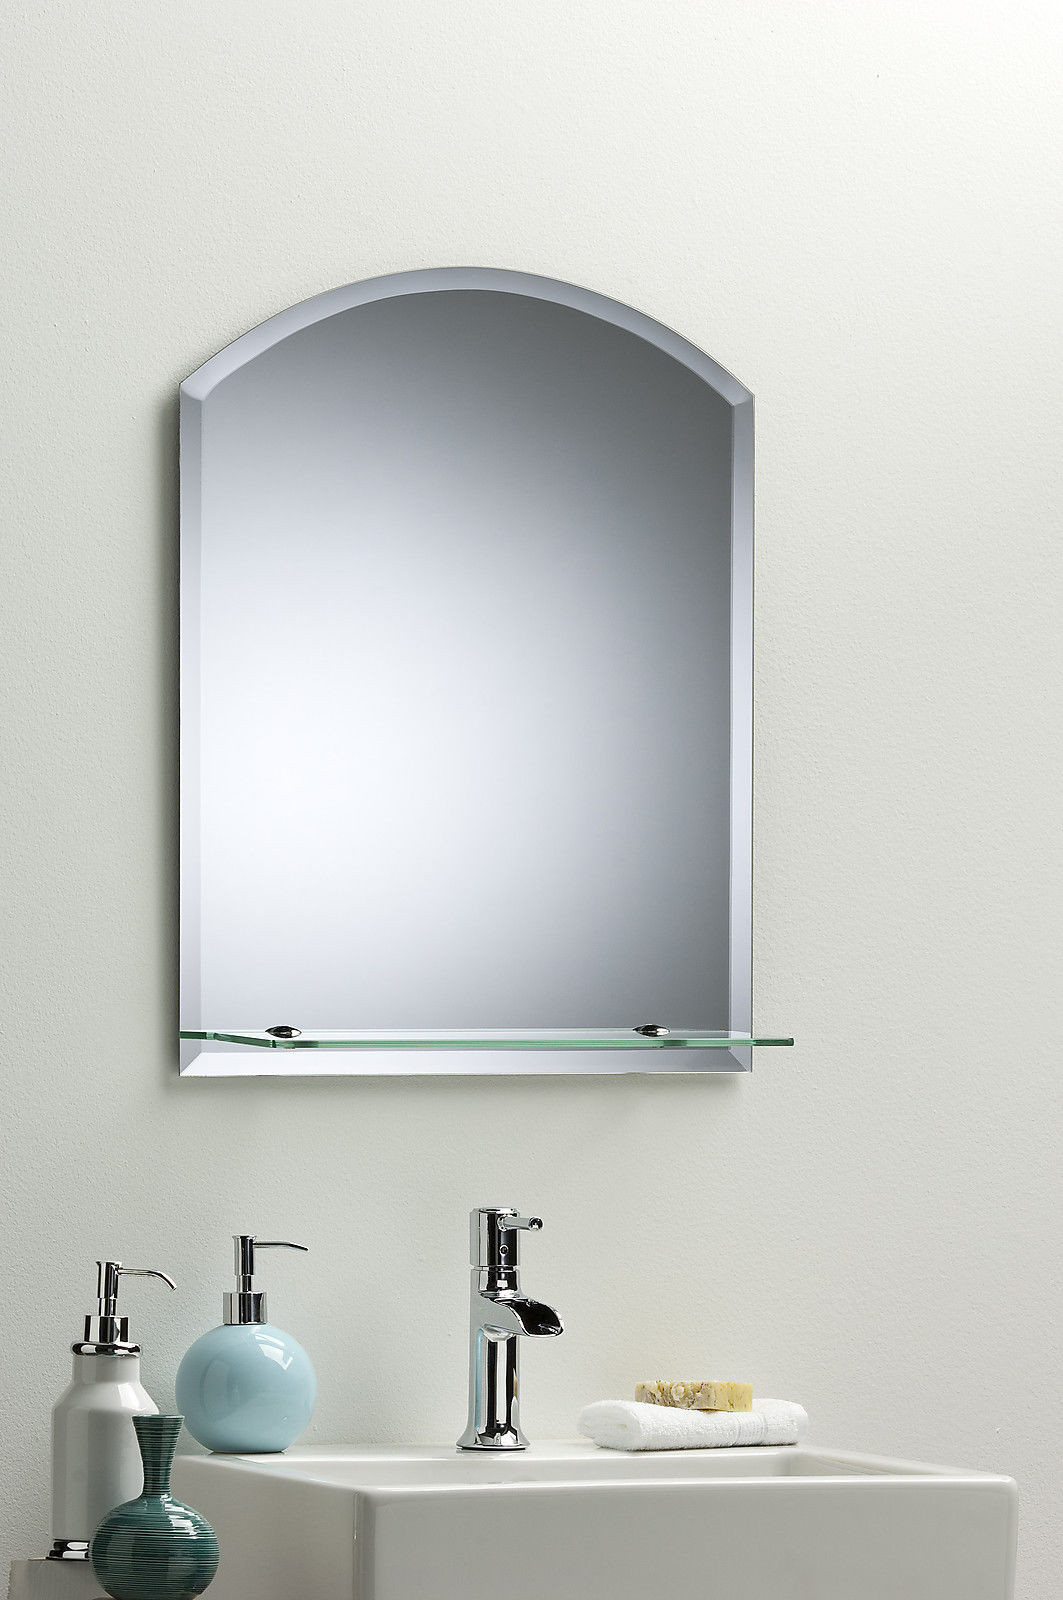 Arched Bathroom Mirror
 BATHROOM WALL MIRROR Modern Stylish ARCH With Shelf And